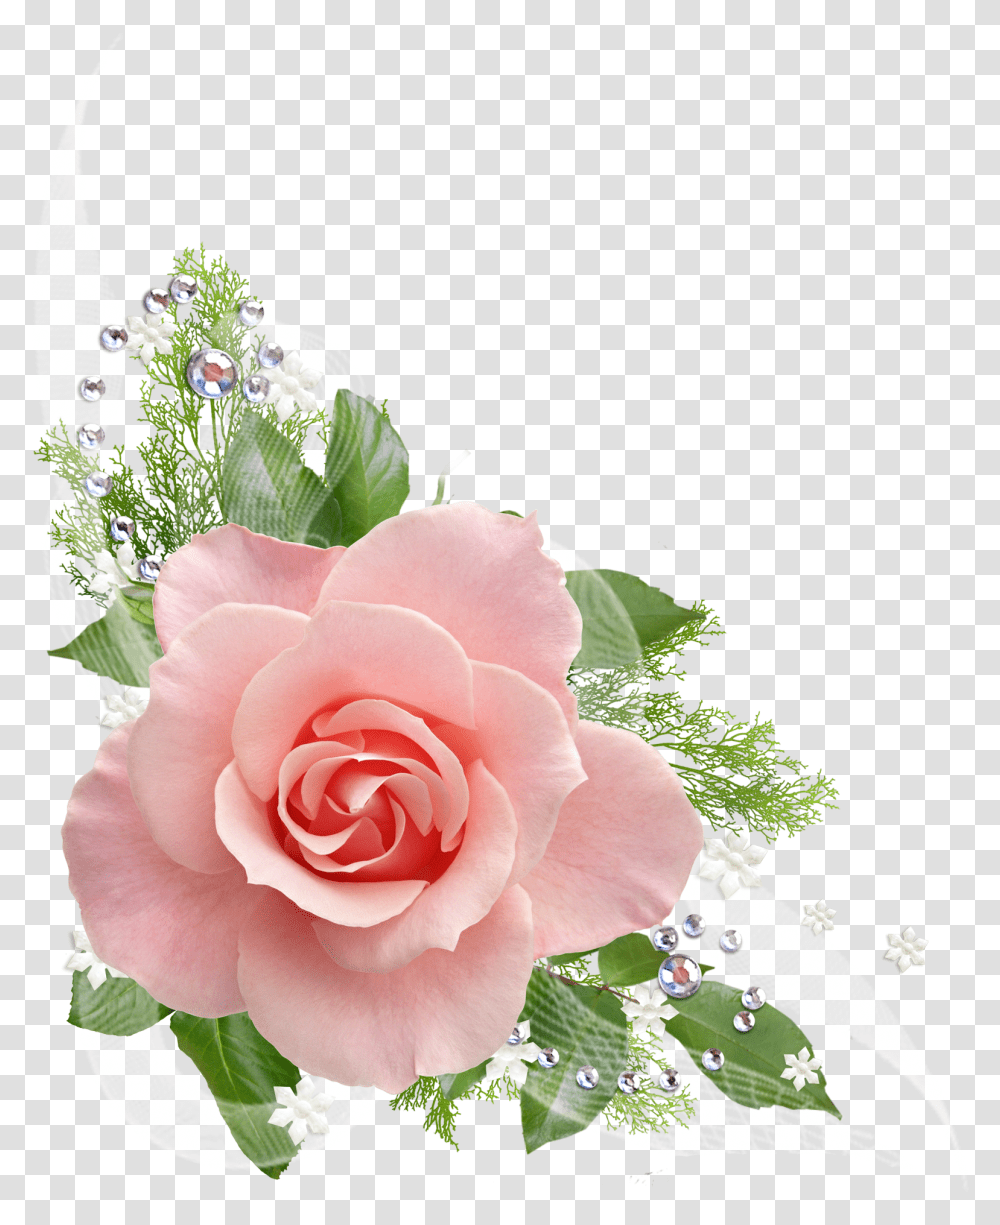 Rosa Pink Roses Background, Plant, Flower, Blossom, Flower Arrangement Transparent Png